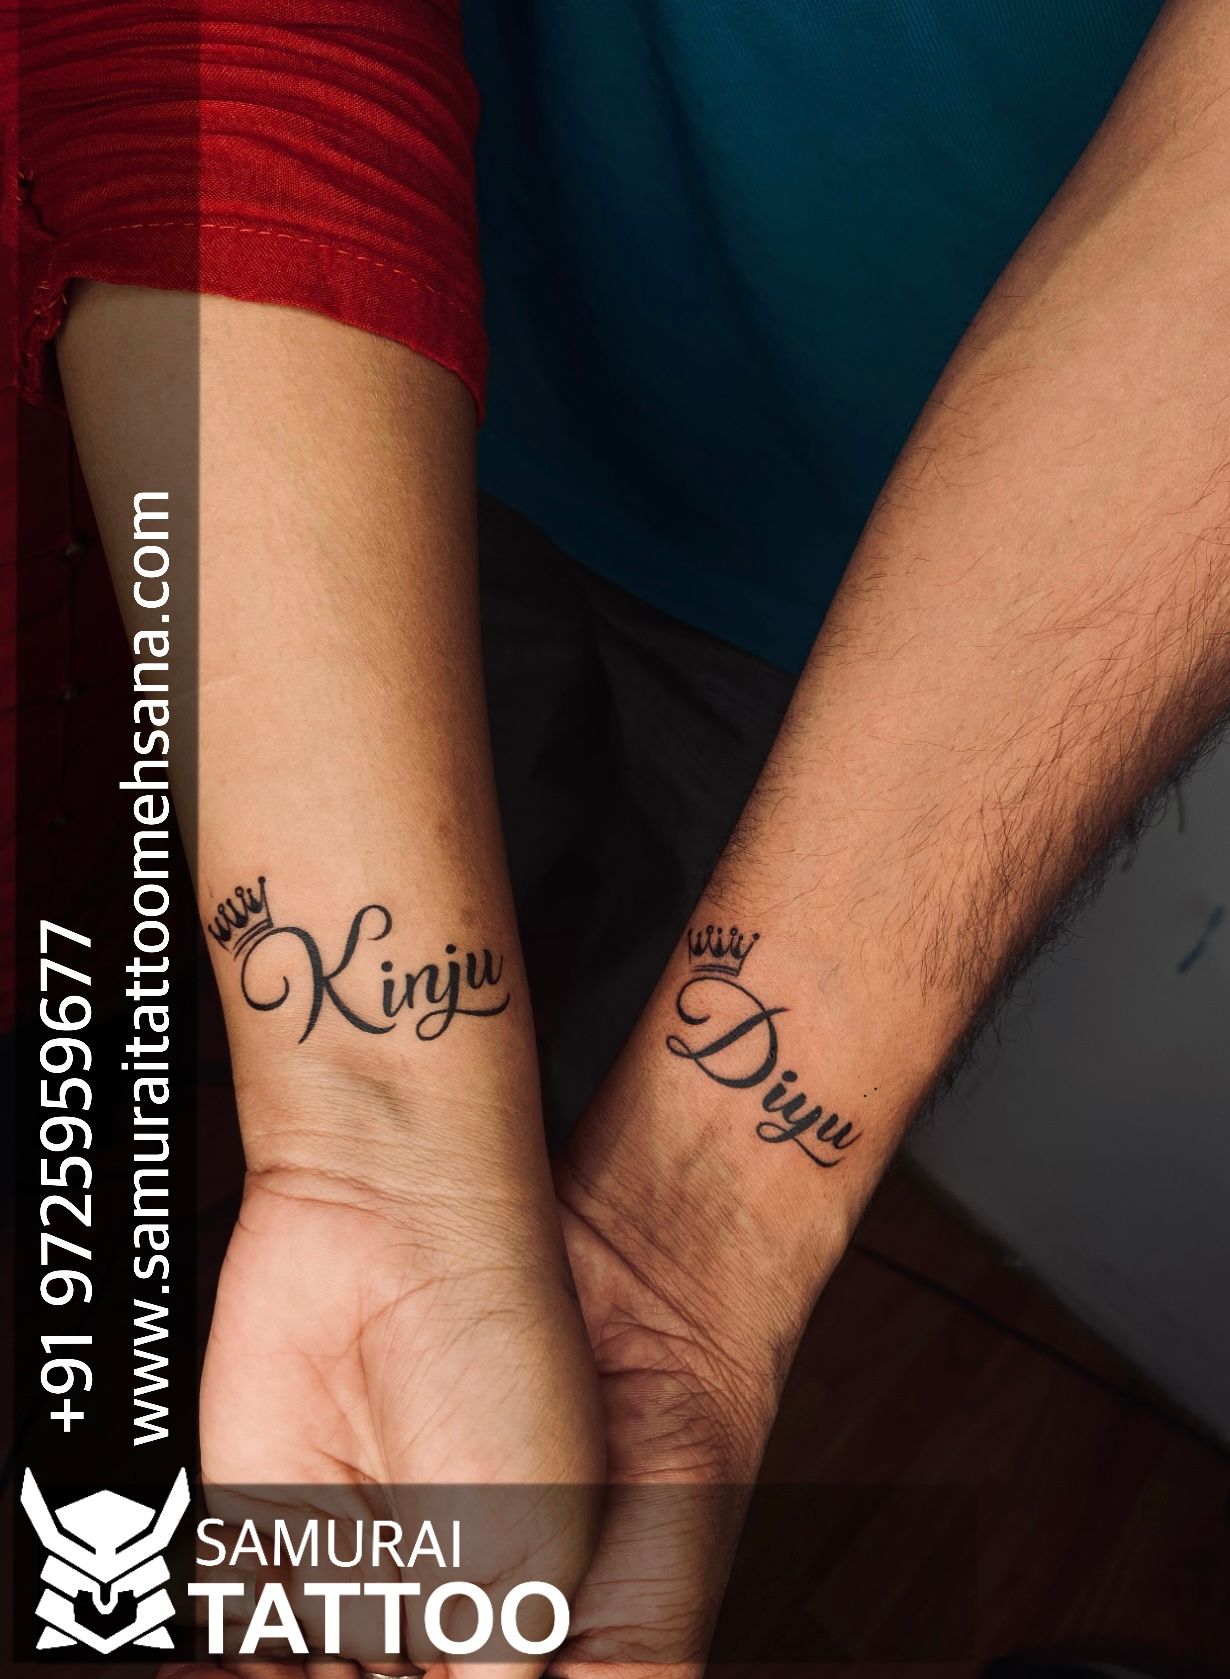 Ananya tattoo studio prabhanis Photos